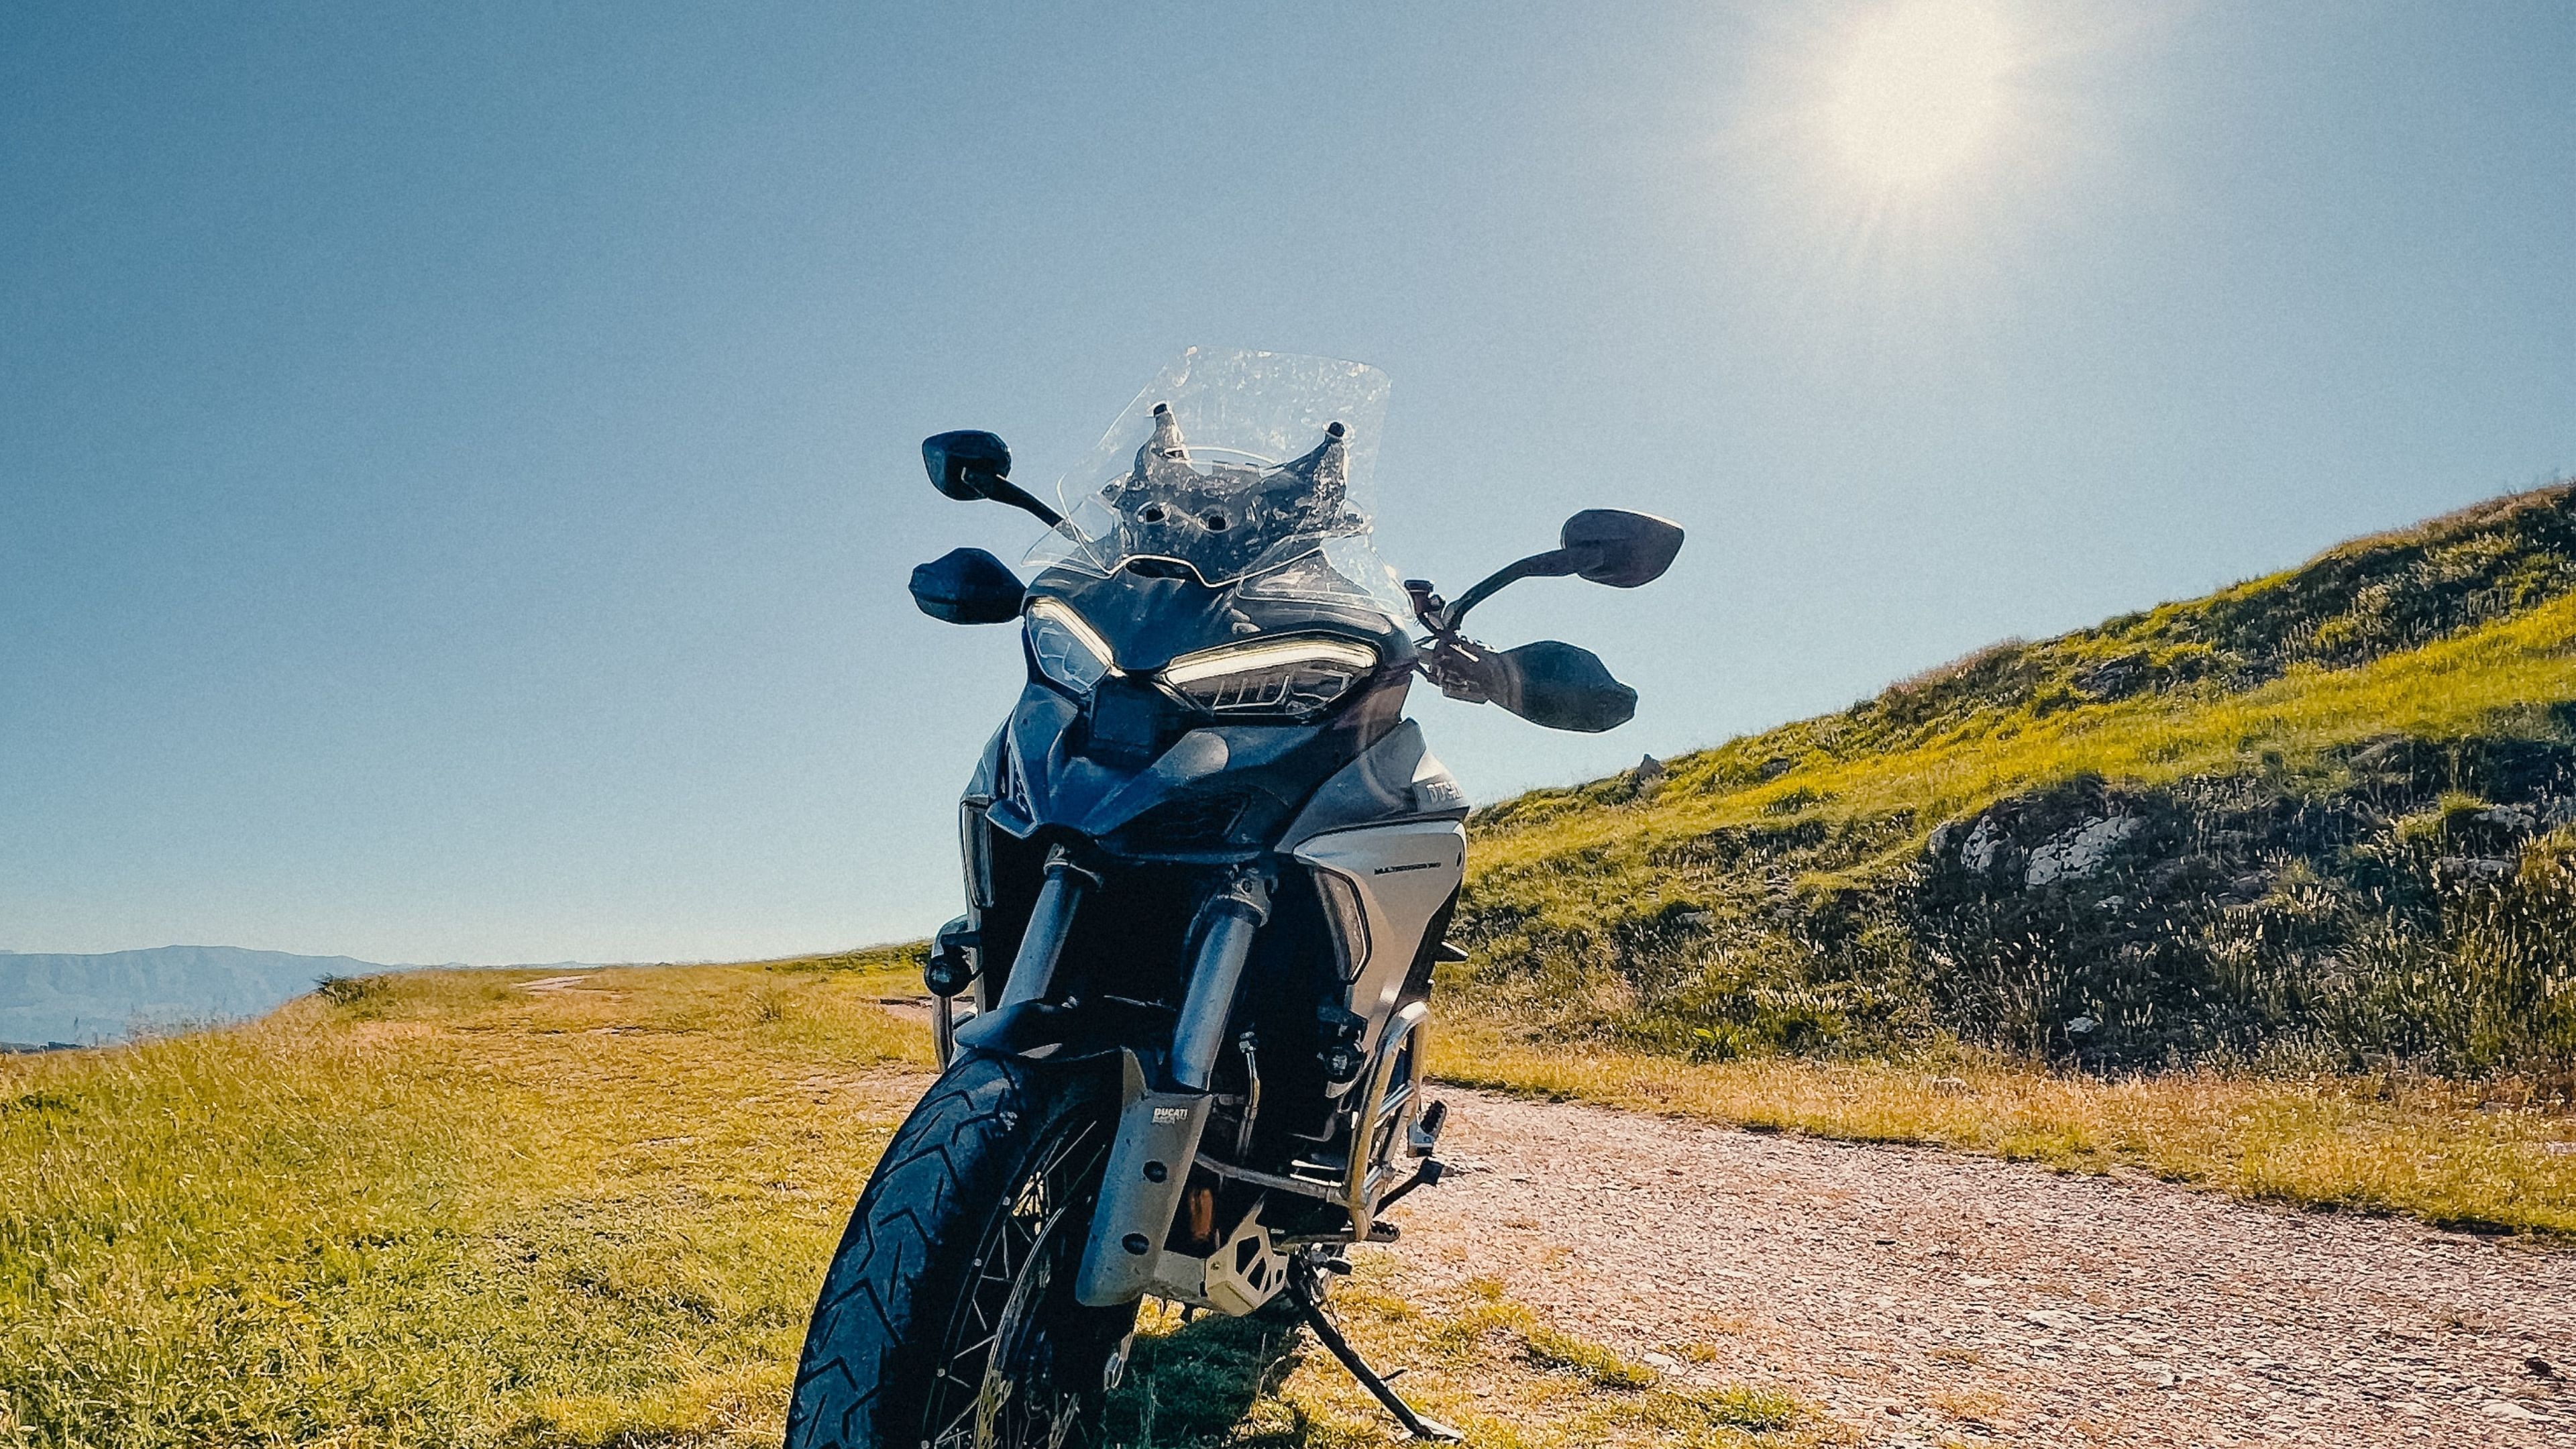 Funda de moto en oferta para dejarla aparcada a 40ºC a la sombra